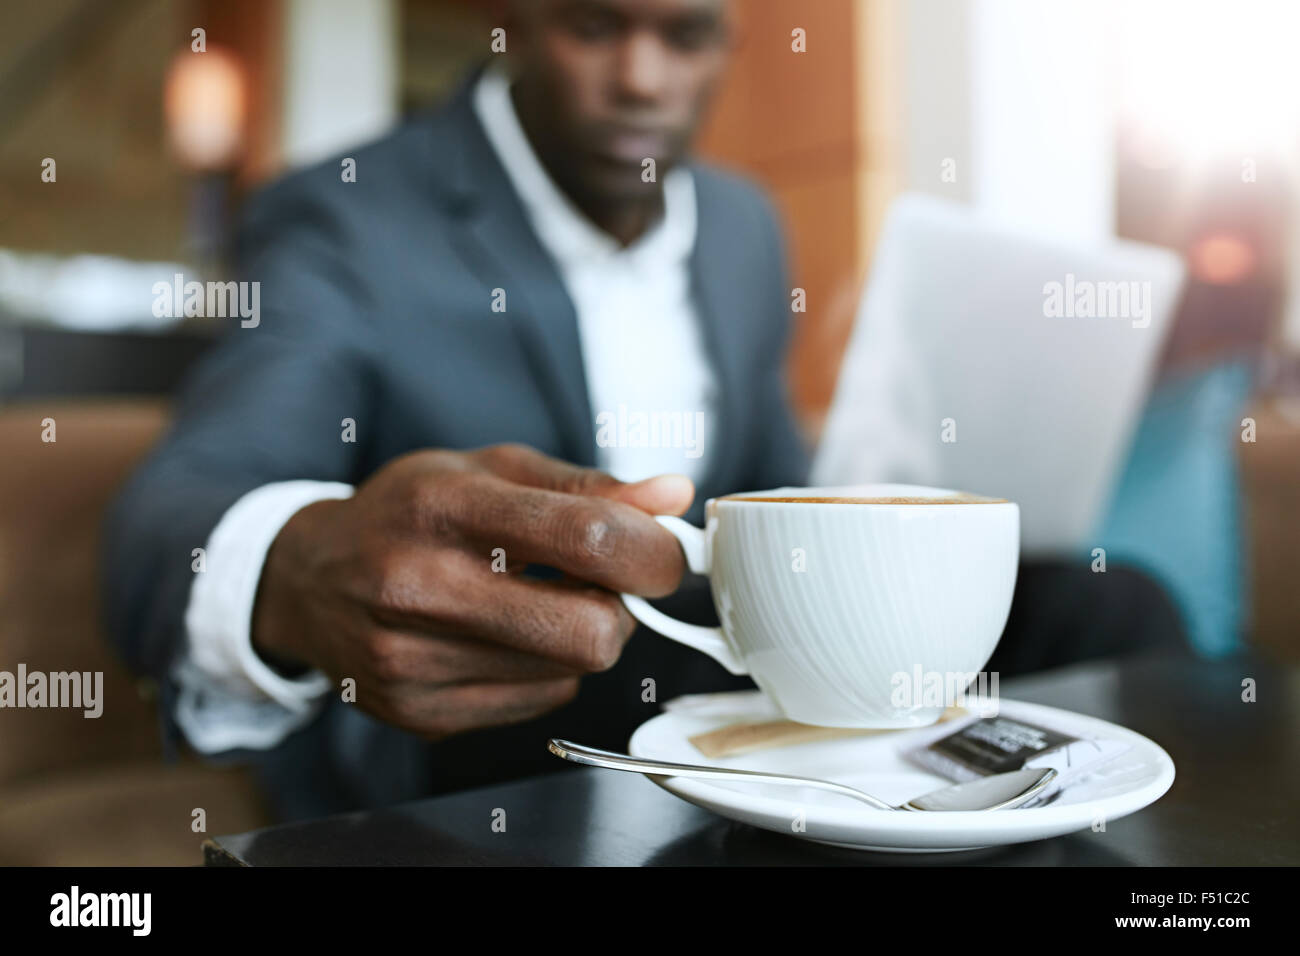 Primer plano de joven 's mano recogiendo una taza de café. Empresario sentado en el vestíbulo del hotel bebiendo café. Foto de stock